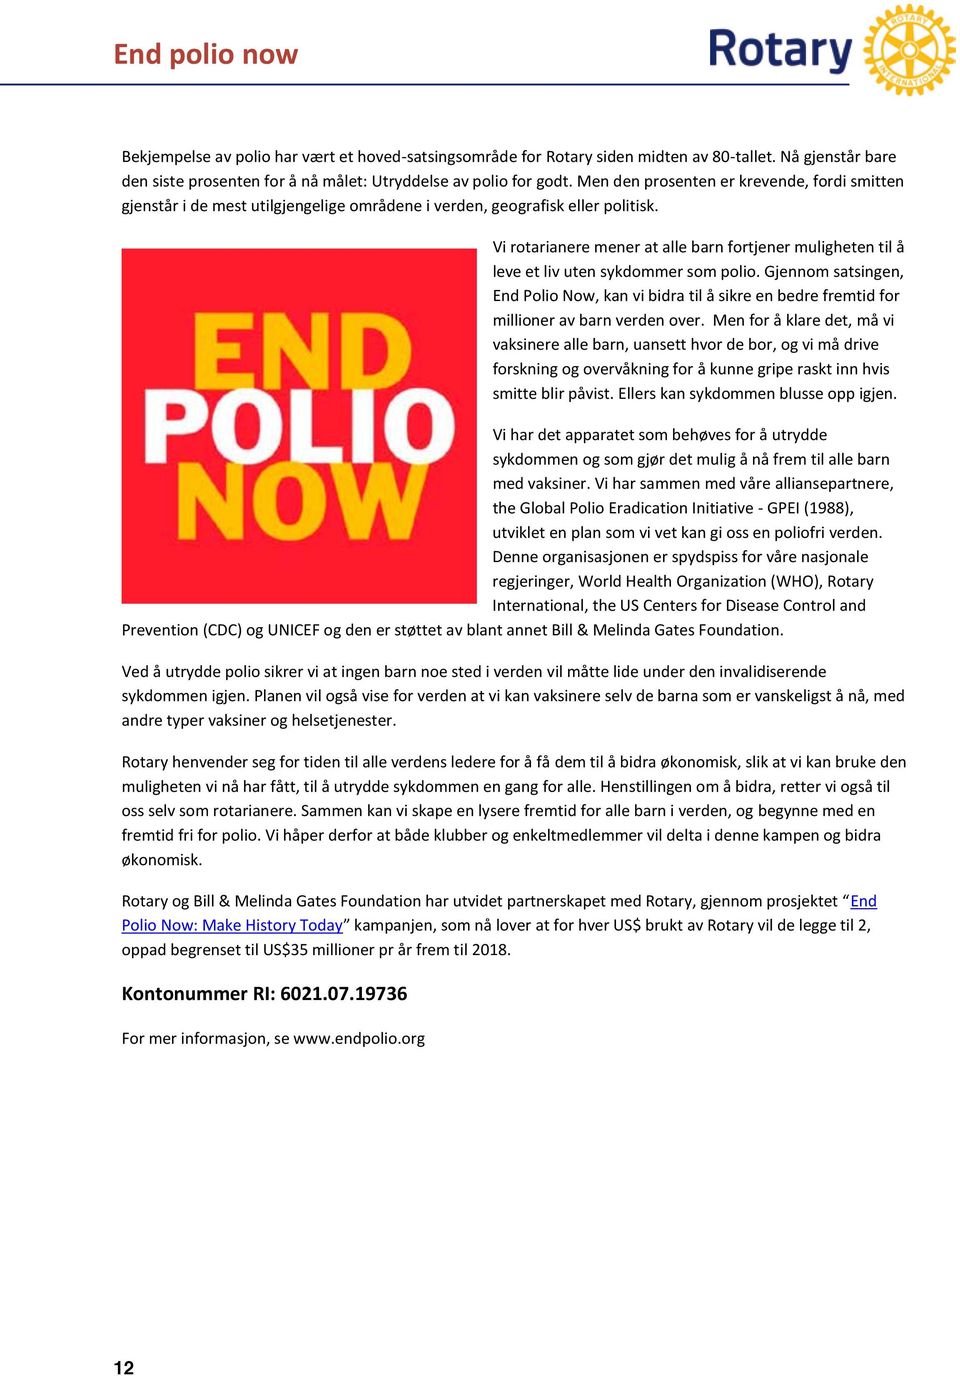 Vi rotarianere mener at alle barn fortjener muligheten til å leve et liv uten sykdommer som polio.